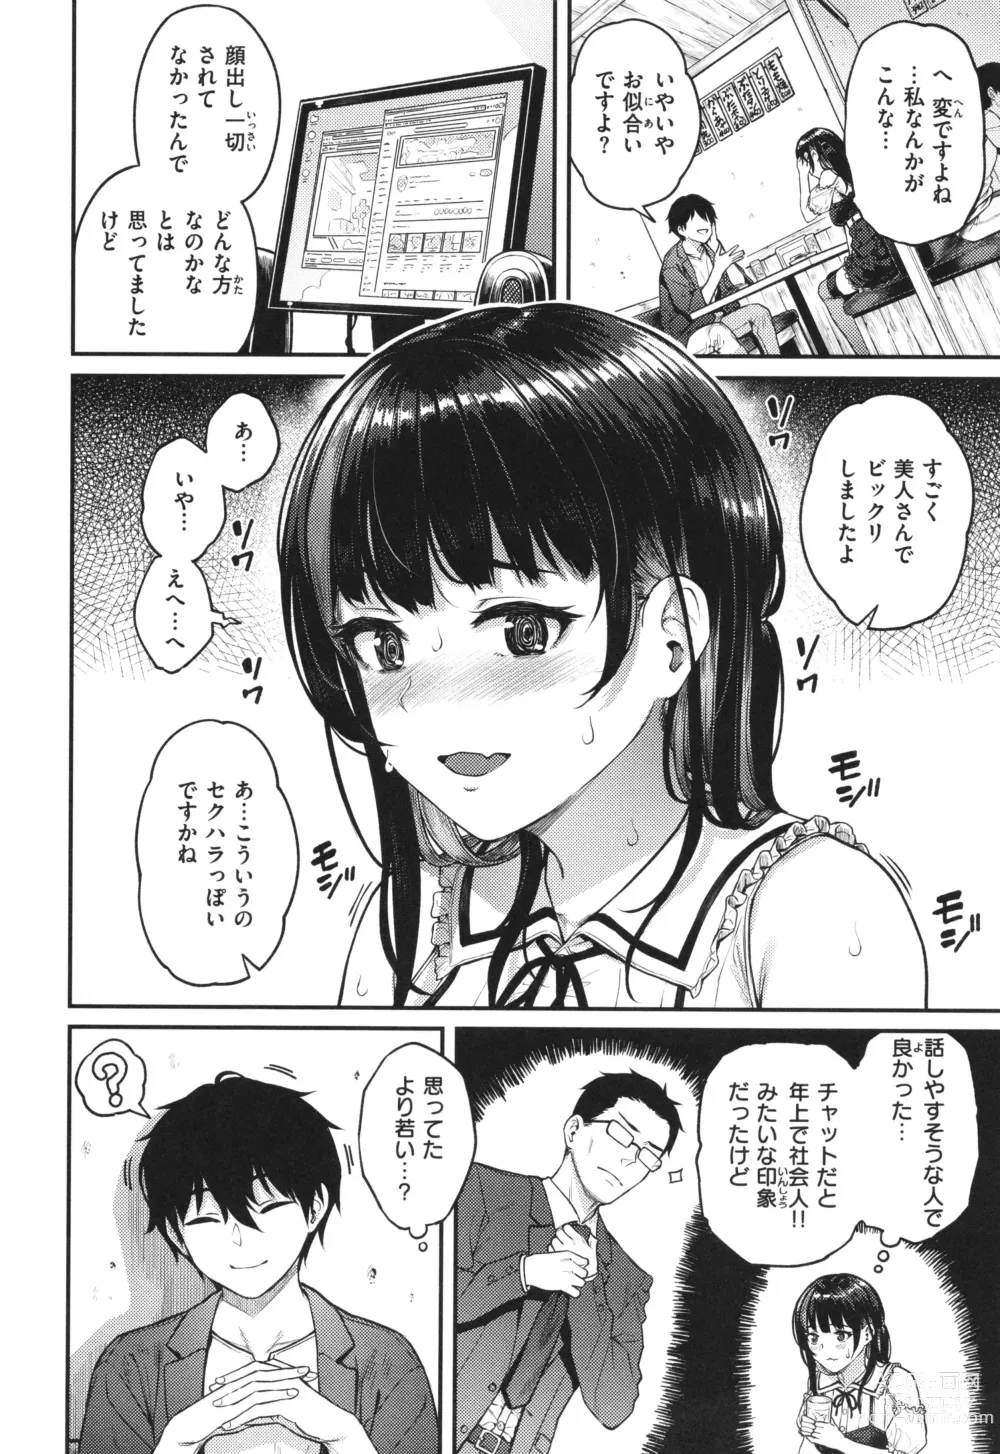 Page 4 of manga Hoshigarikko - Excited Girls Play + Toranoana Gentei Tokuten COMICS ROUGH&CHARACTAR NOTES